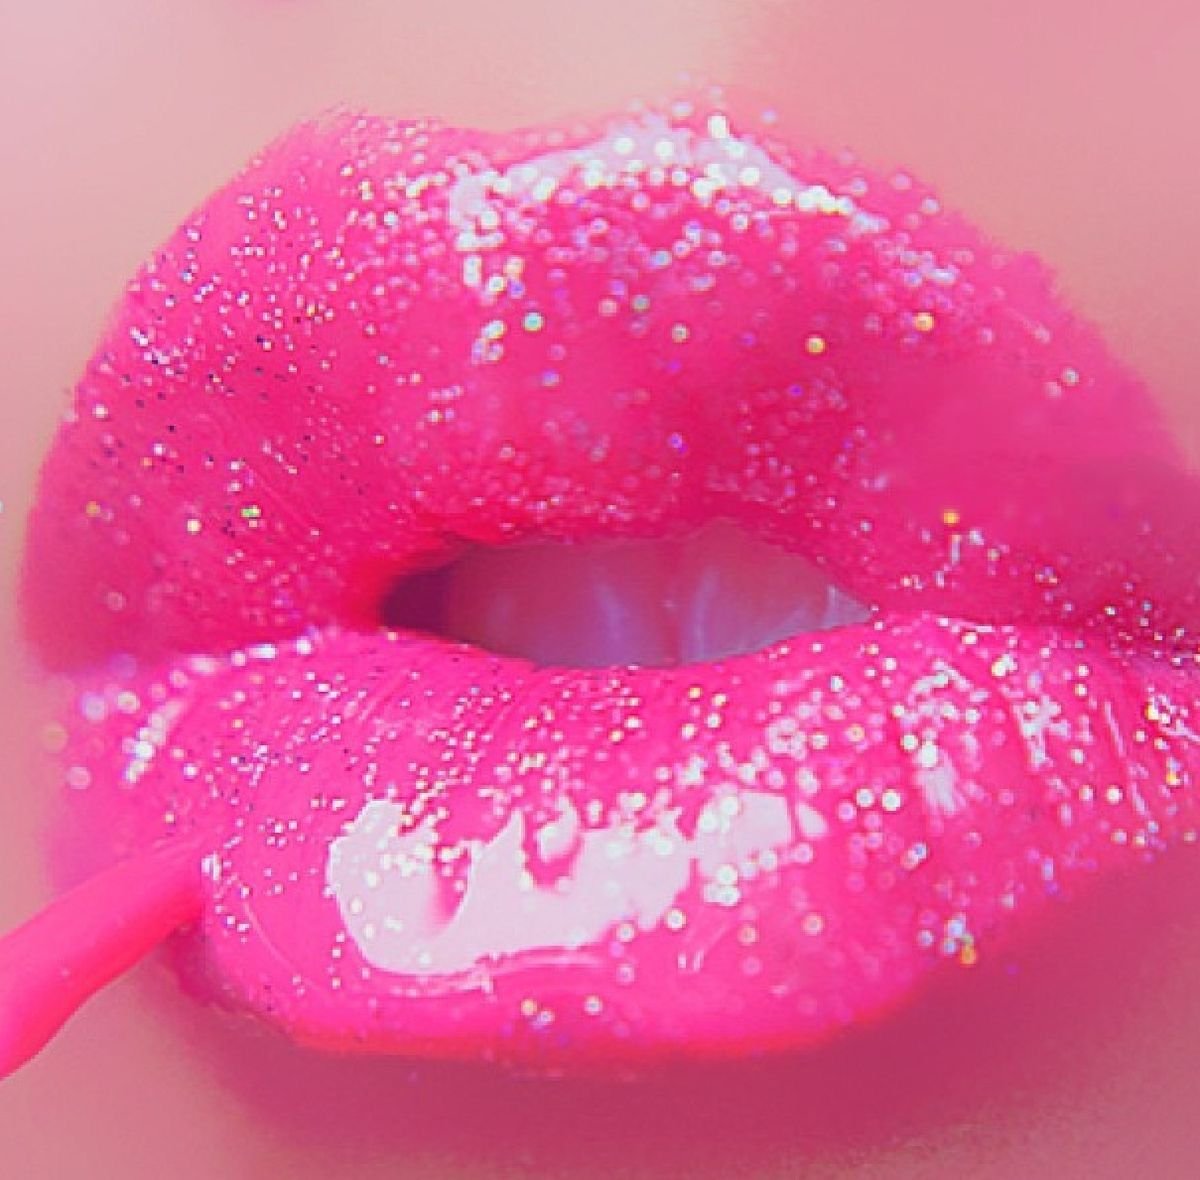 Розовый вход и маленькие губы киски фото